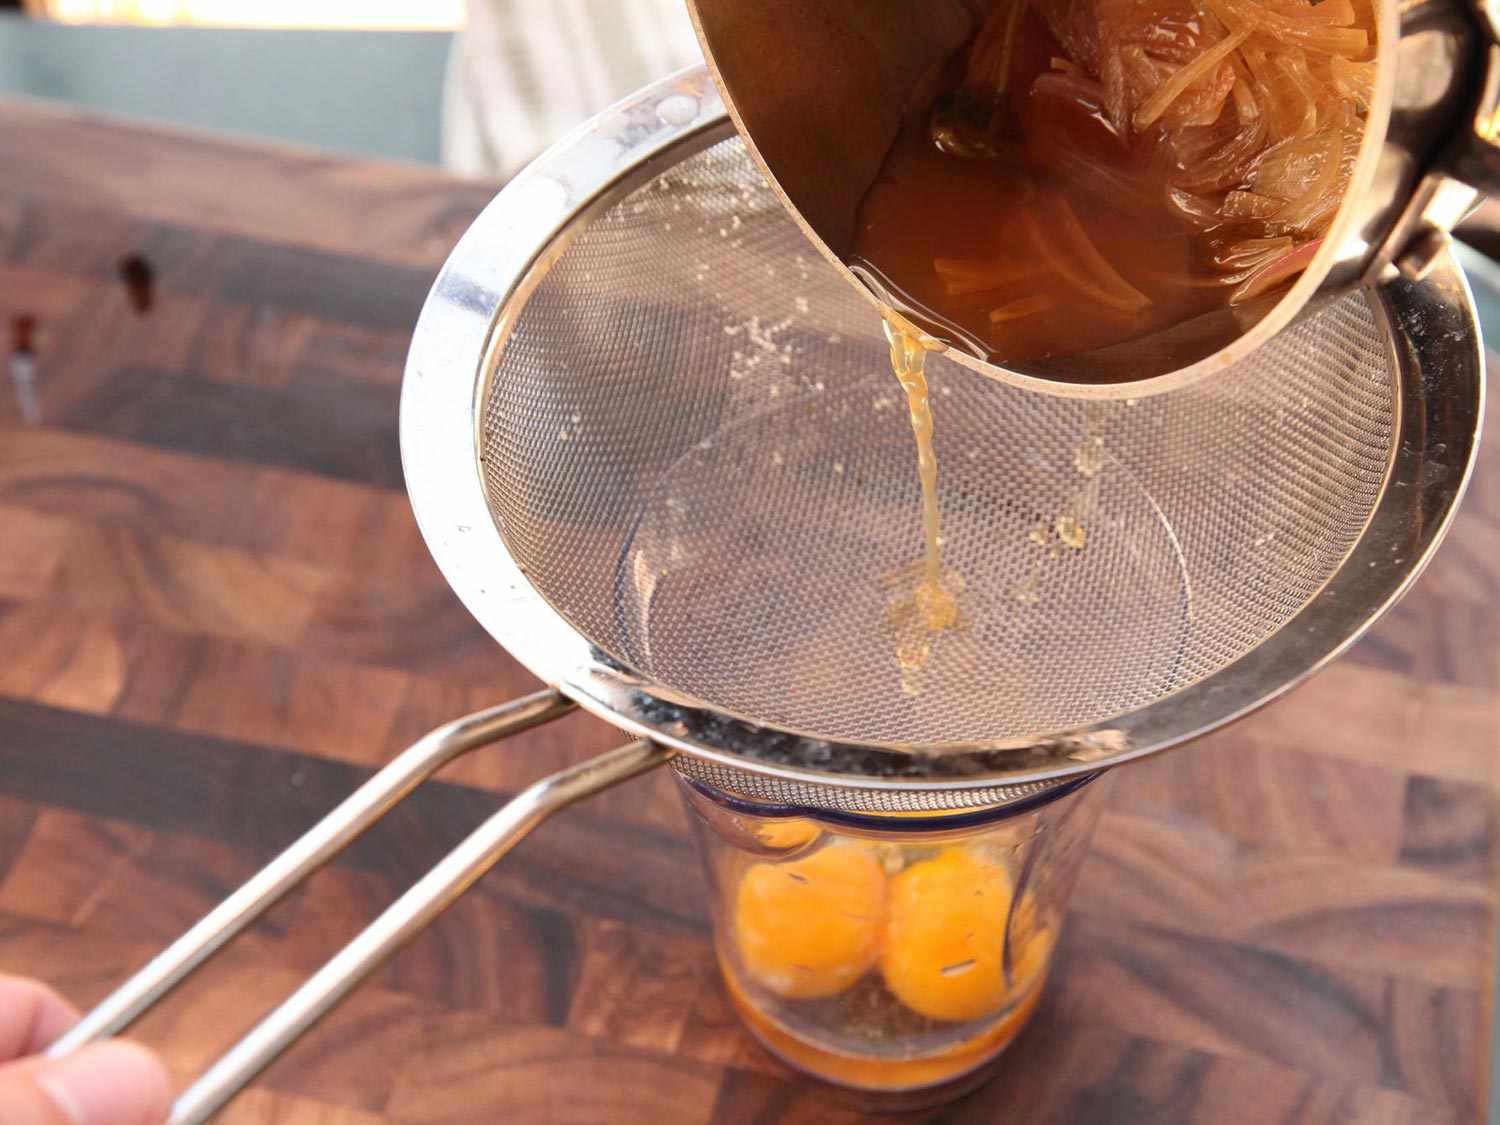 用滤网将浸泡过的醋倒入与蛋黄混合的坛子中，制成蛋黄酱